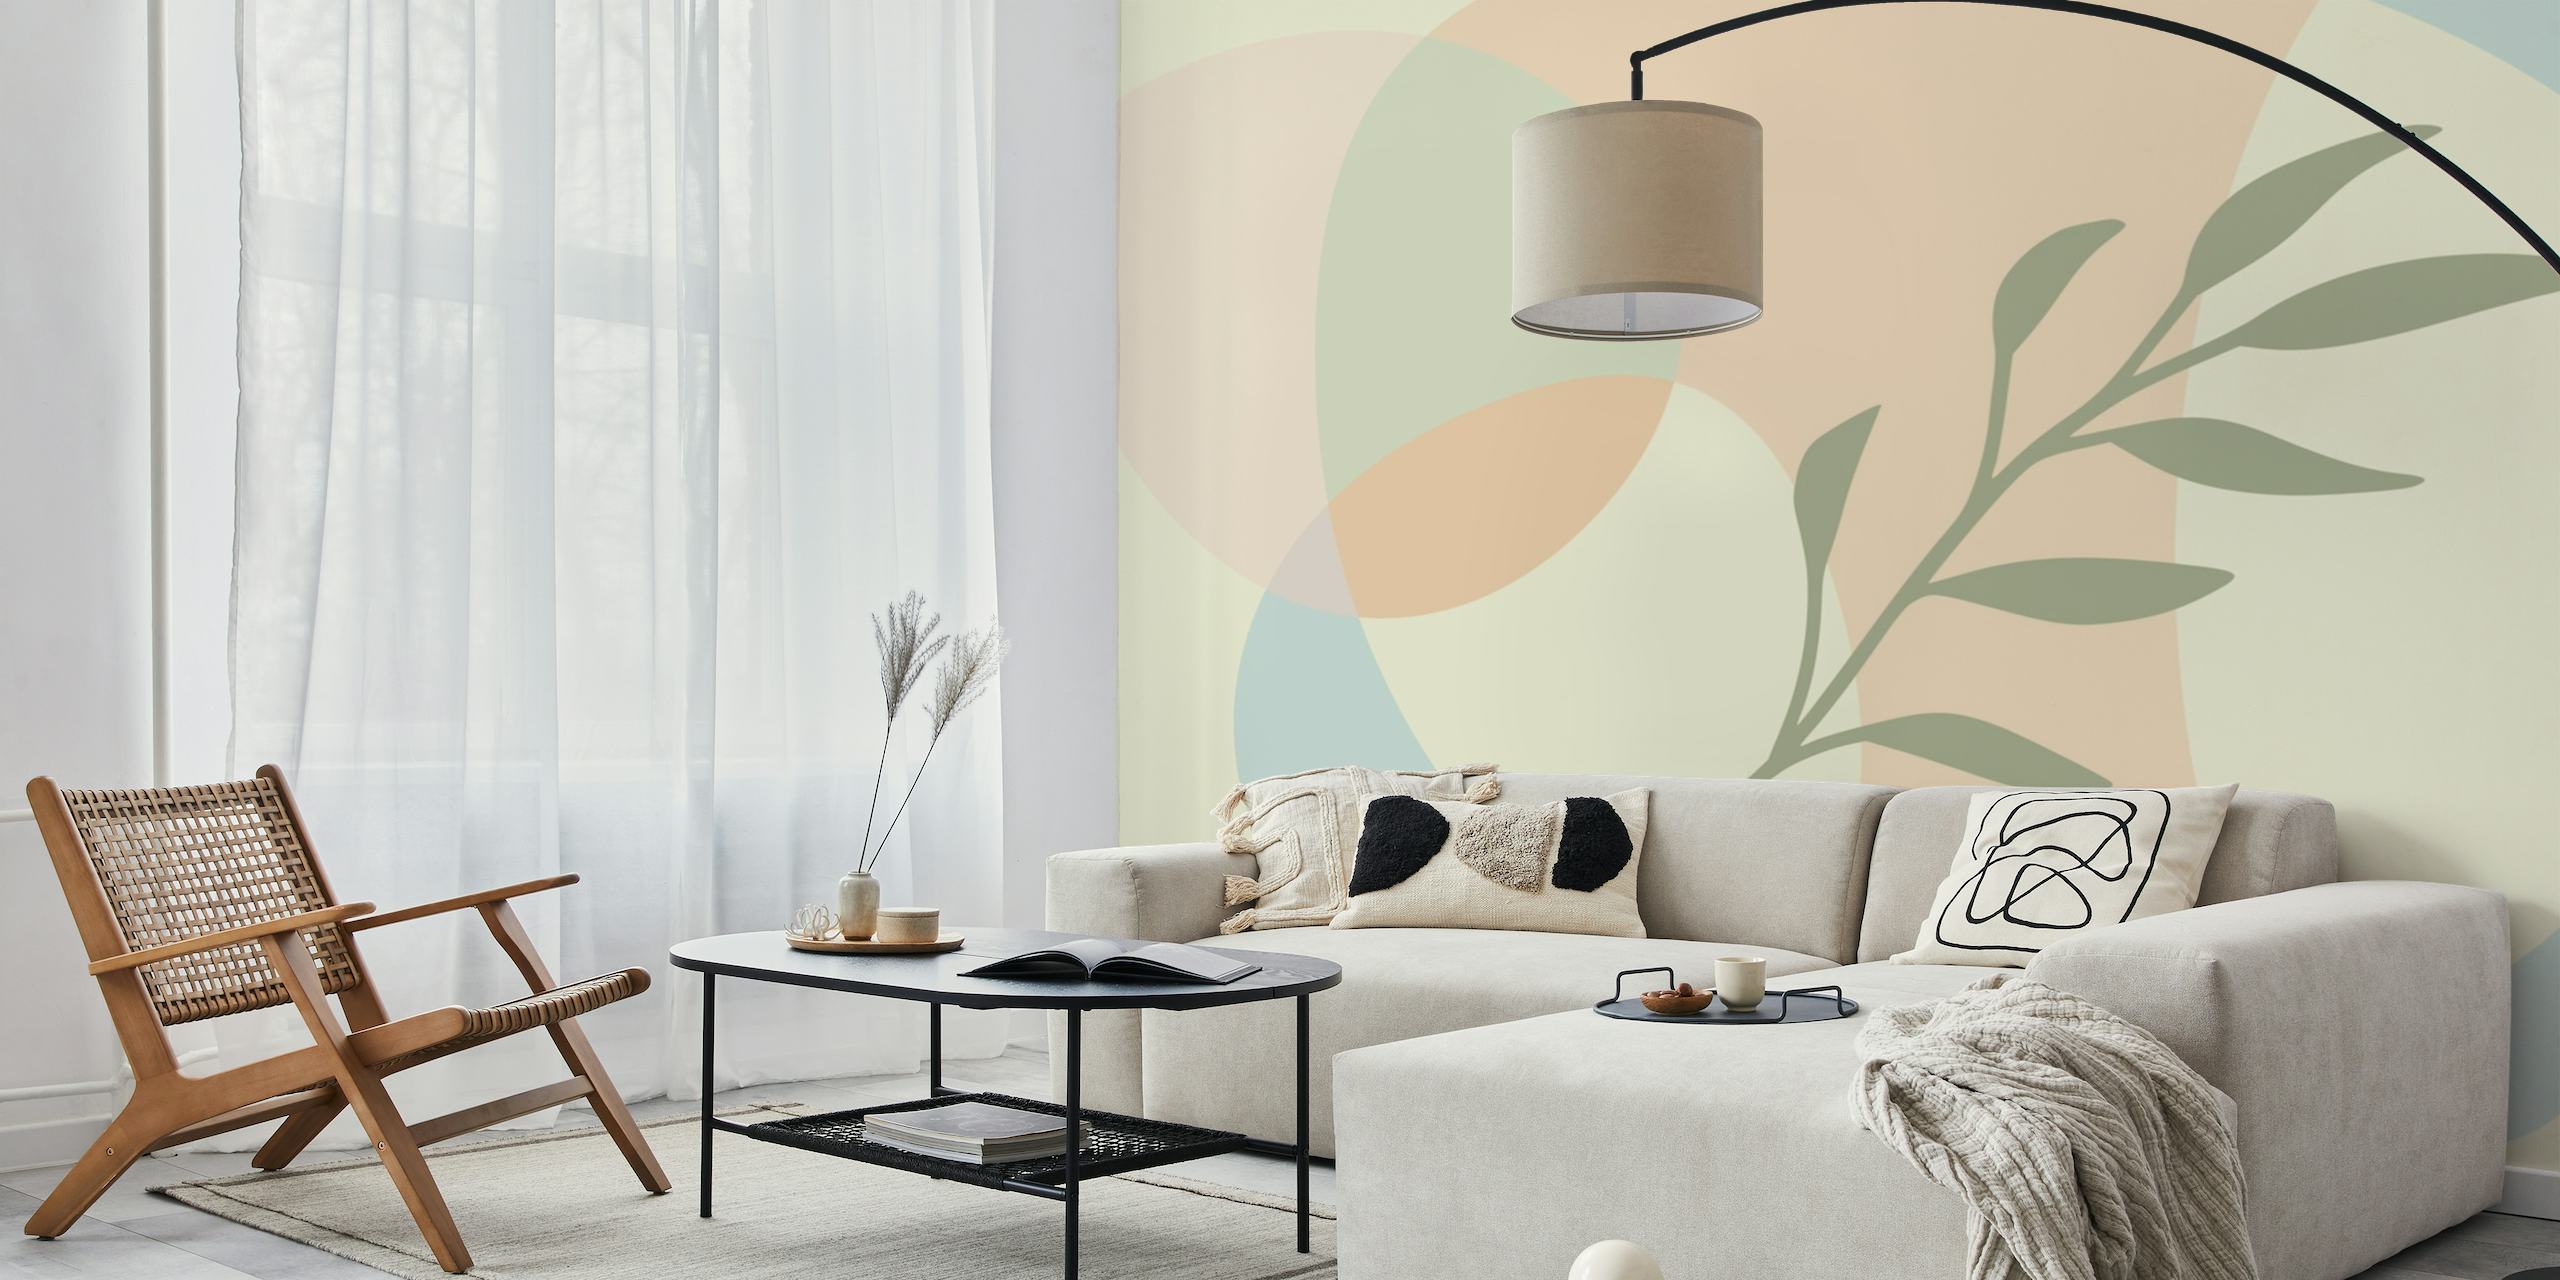 Fotomural vinílico de parede estilo boêmio minimalista com tons pastel e desenho de folhas